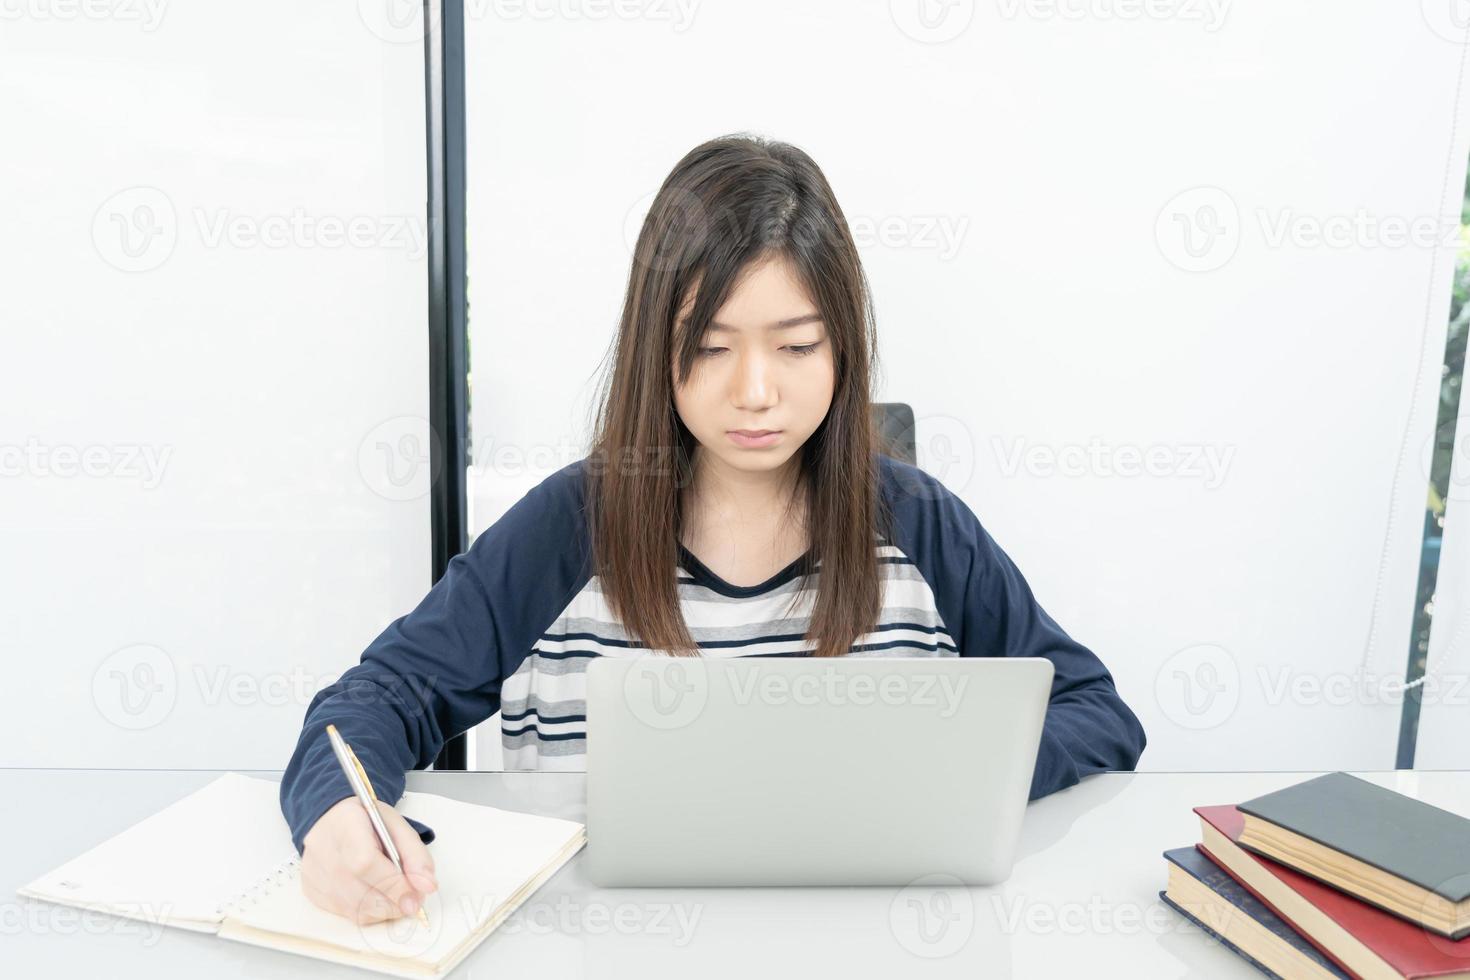 ung kvinna studerande Sammanträde i levande rum och inlärning uppkopplad foto